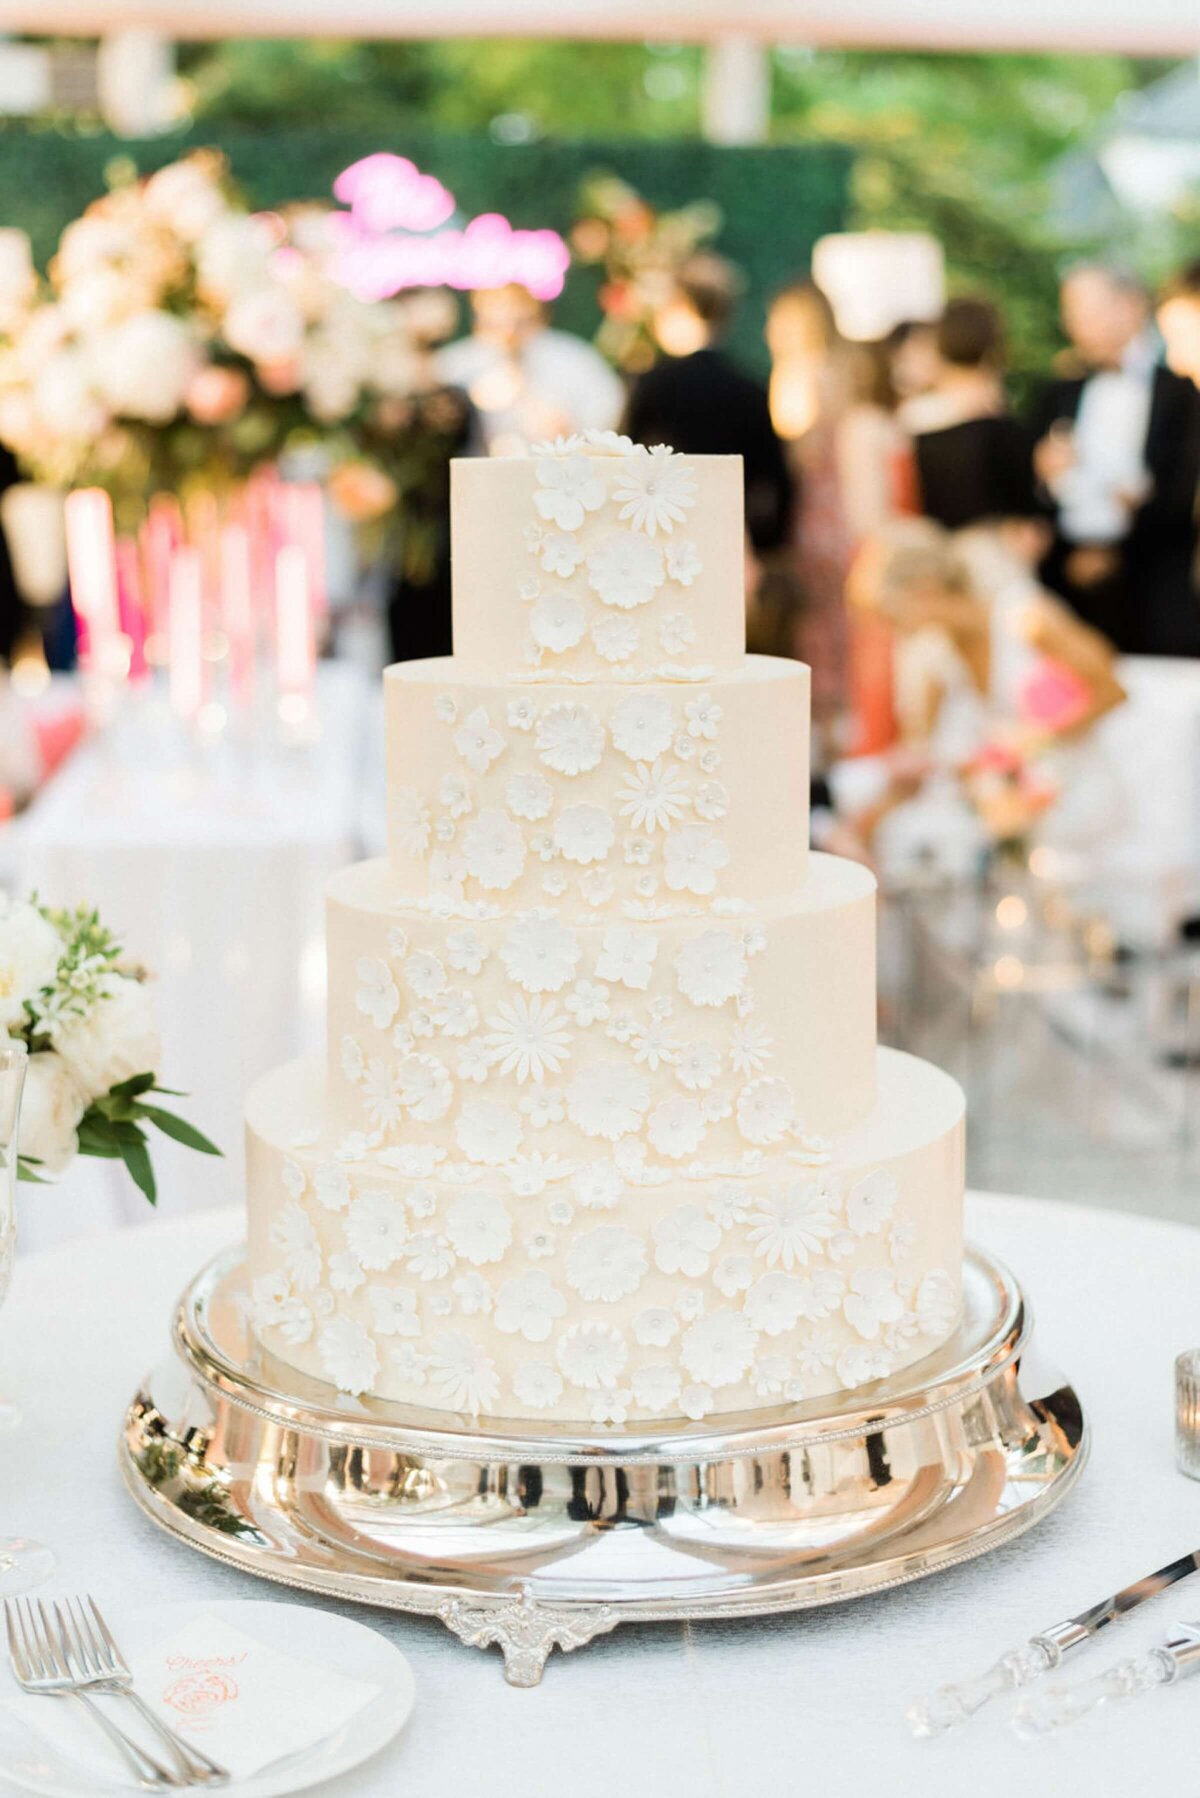 white and cream wedding cake